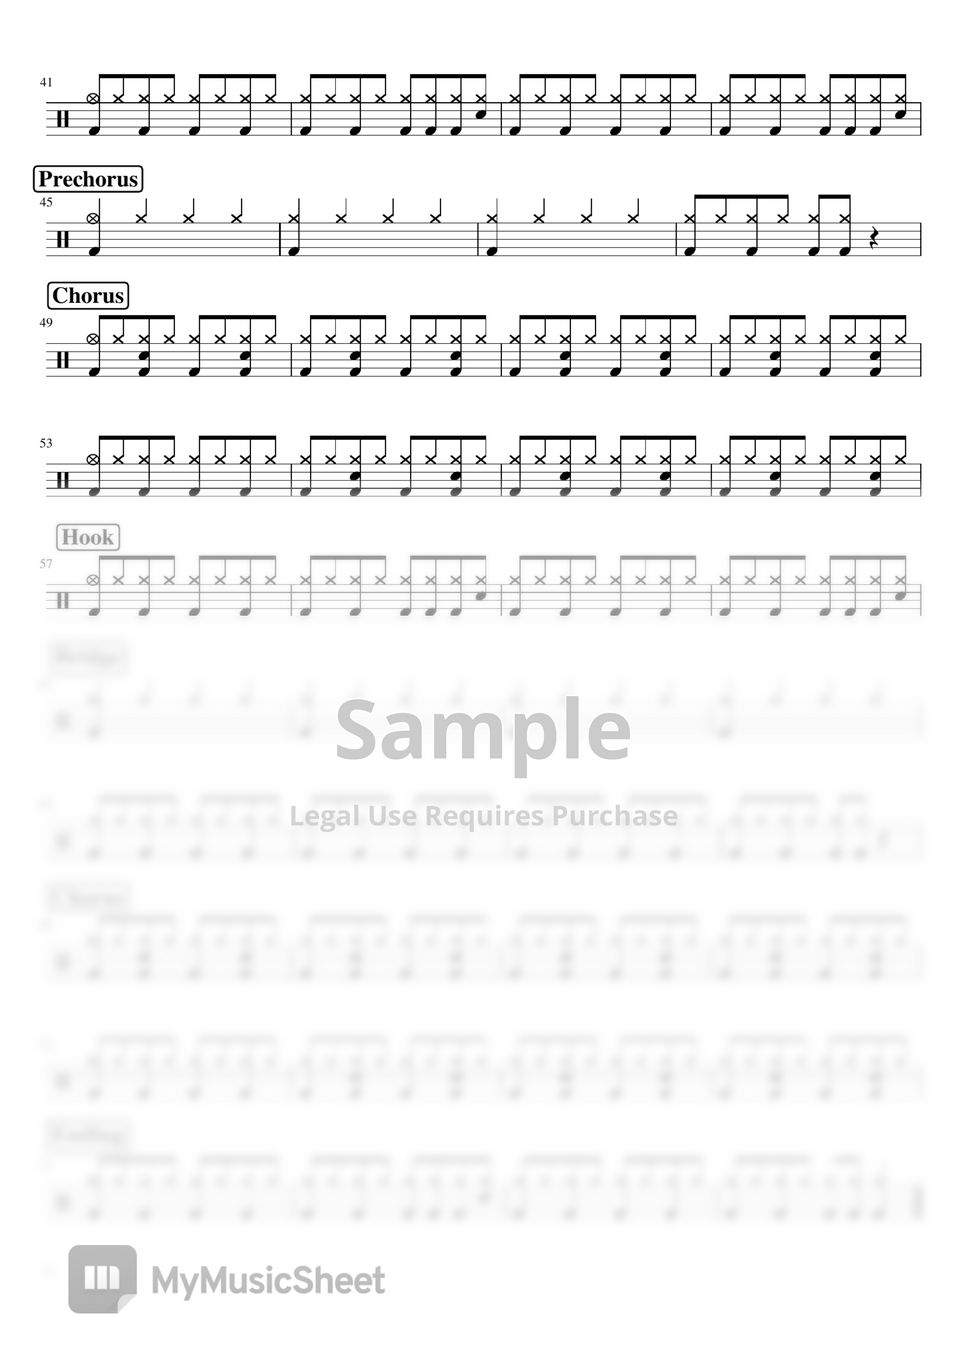 르세라핌 - ANTIFRAGILE (Lv1) by yeols drum